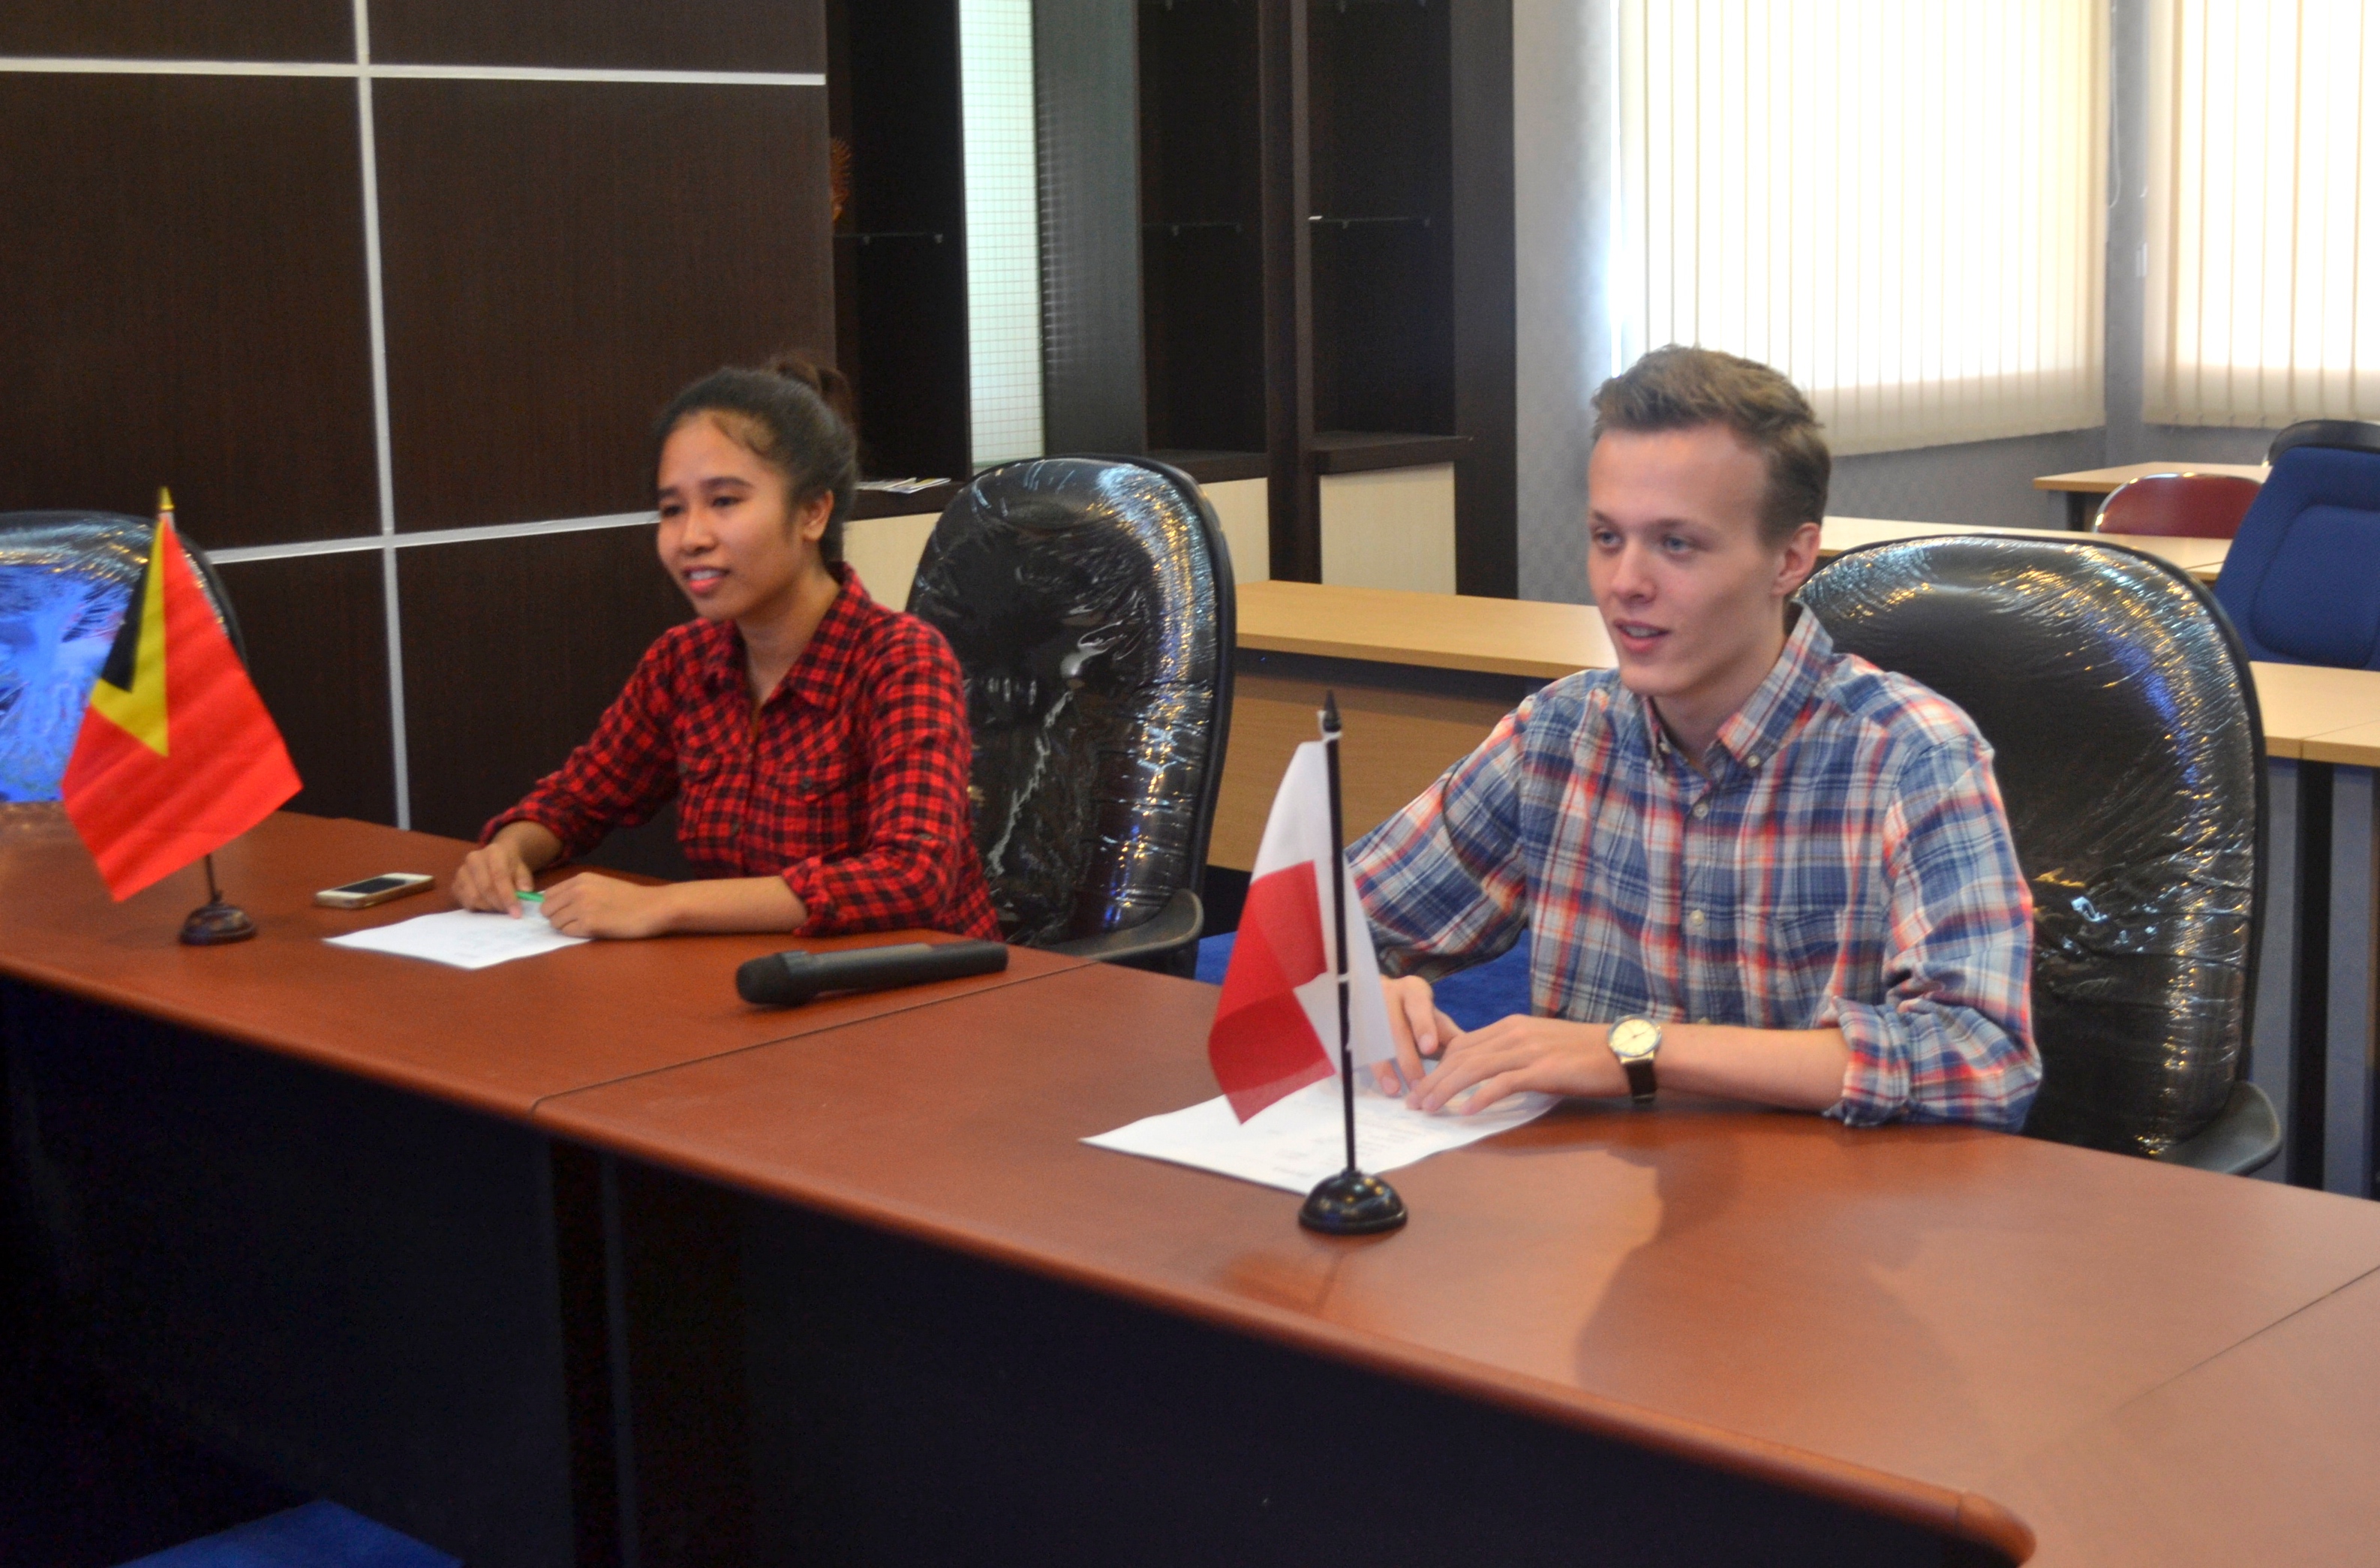 Arkadiuz Bartnik Polandia & Anita Natalia Timor Leste Ceritakan Pengalamannya selama Berkuliah di Universitas